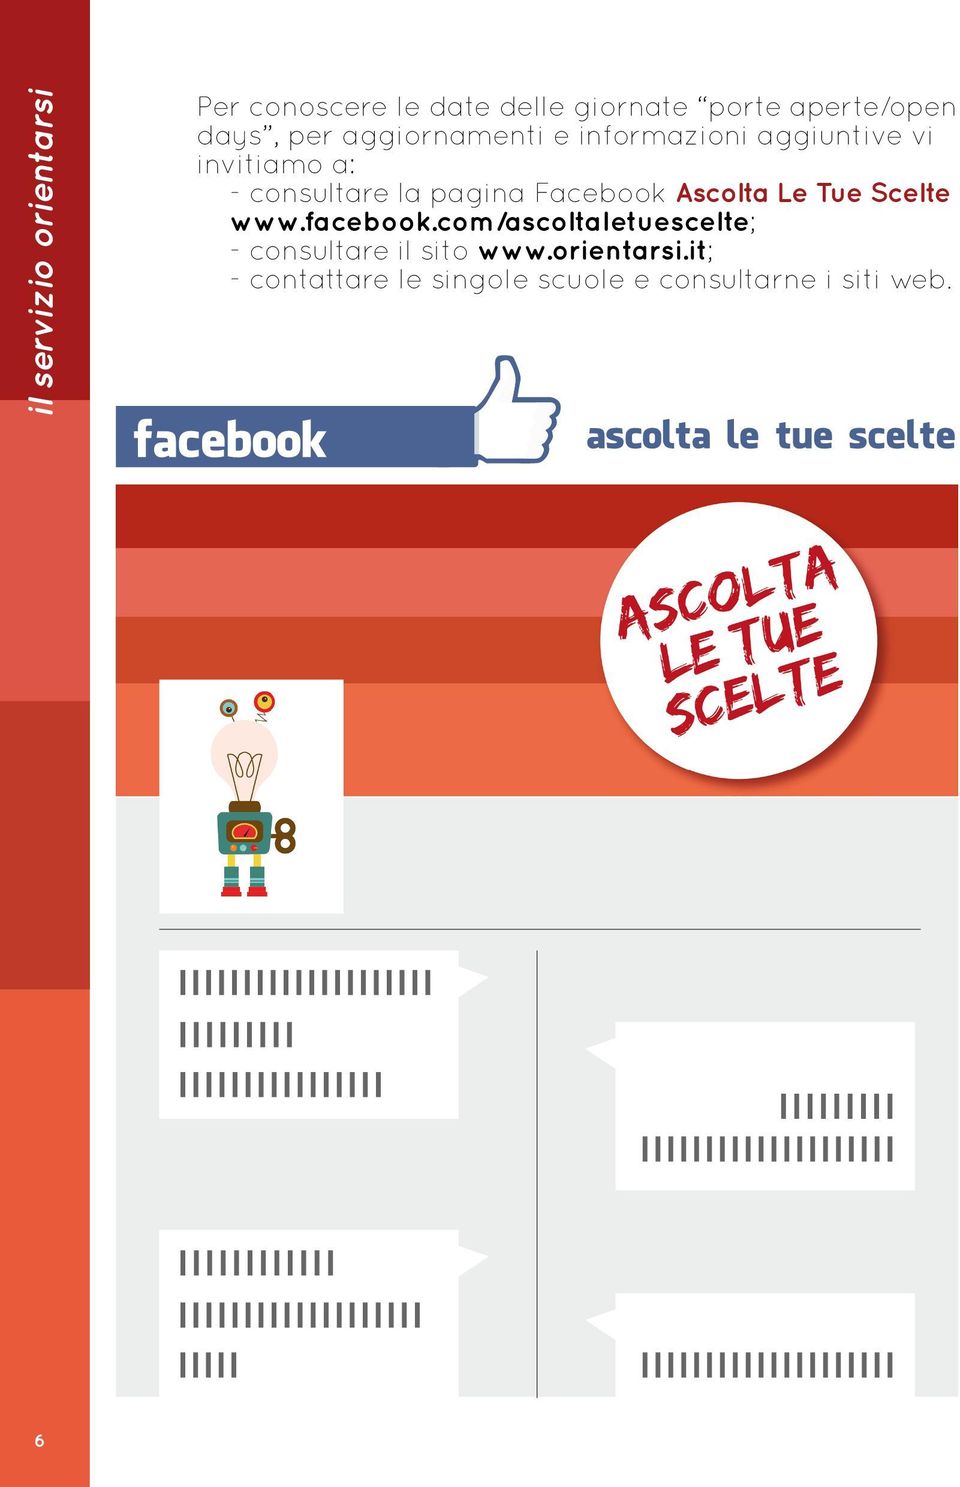 Facebook Ascolta Le Tue Scelte www.facebook.